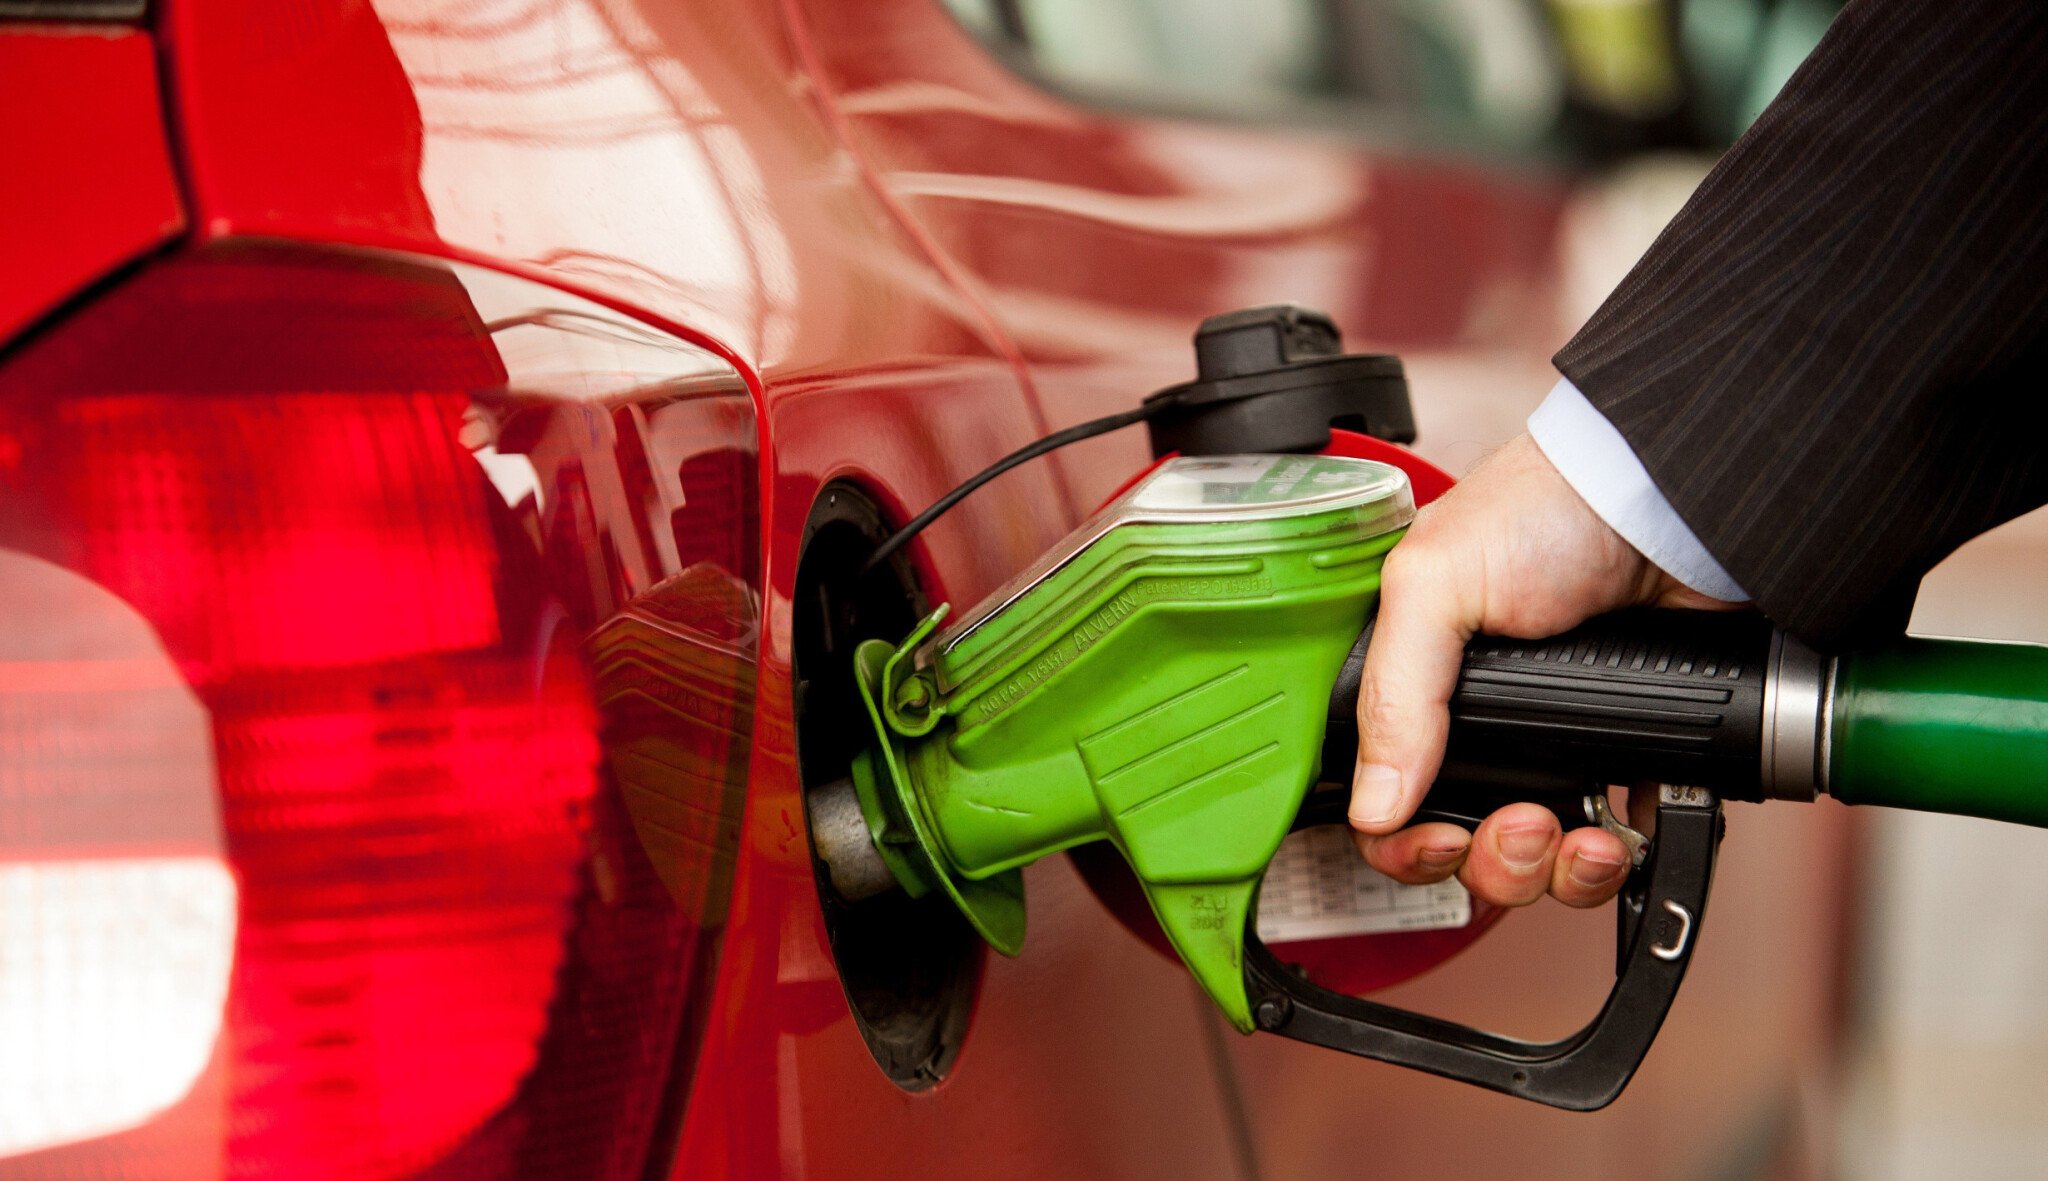 Ceny pohonných hmot v Česku dál klesají. Zlevňování ale zpomalilo